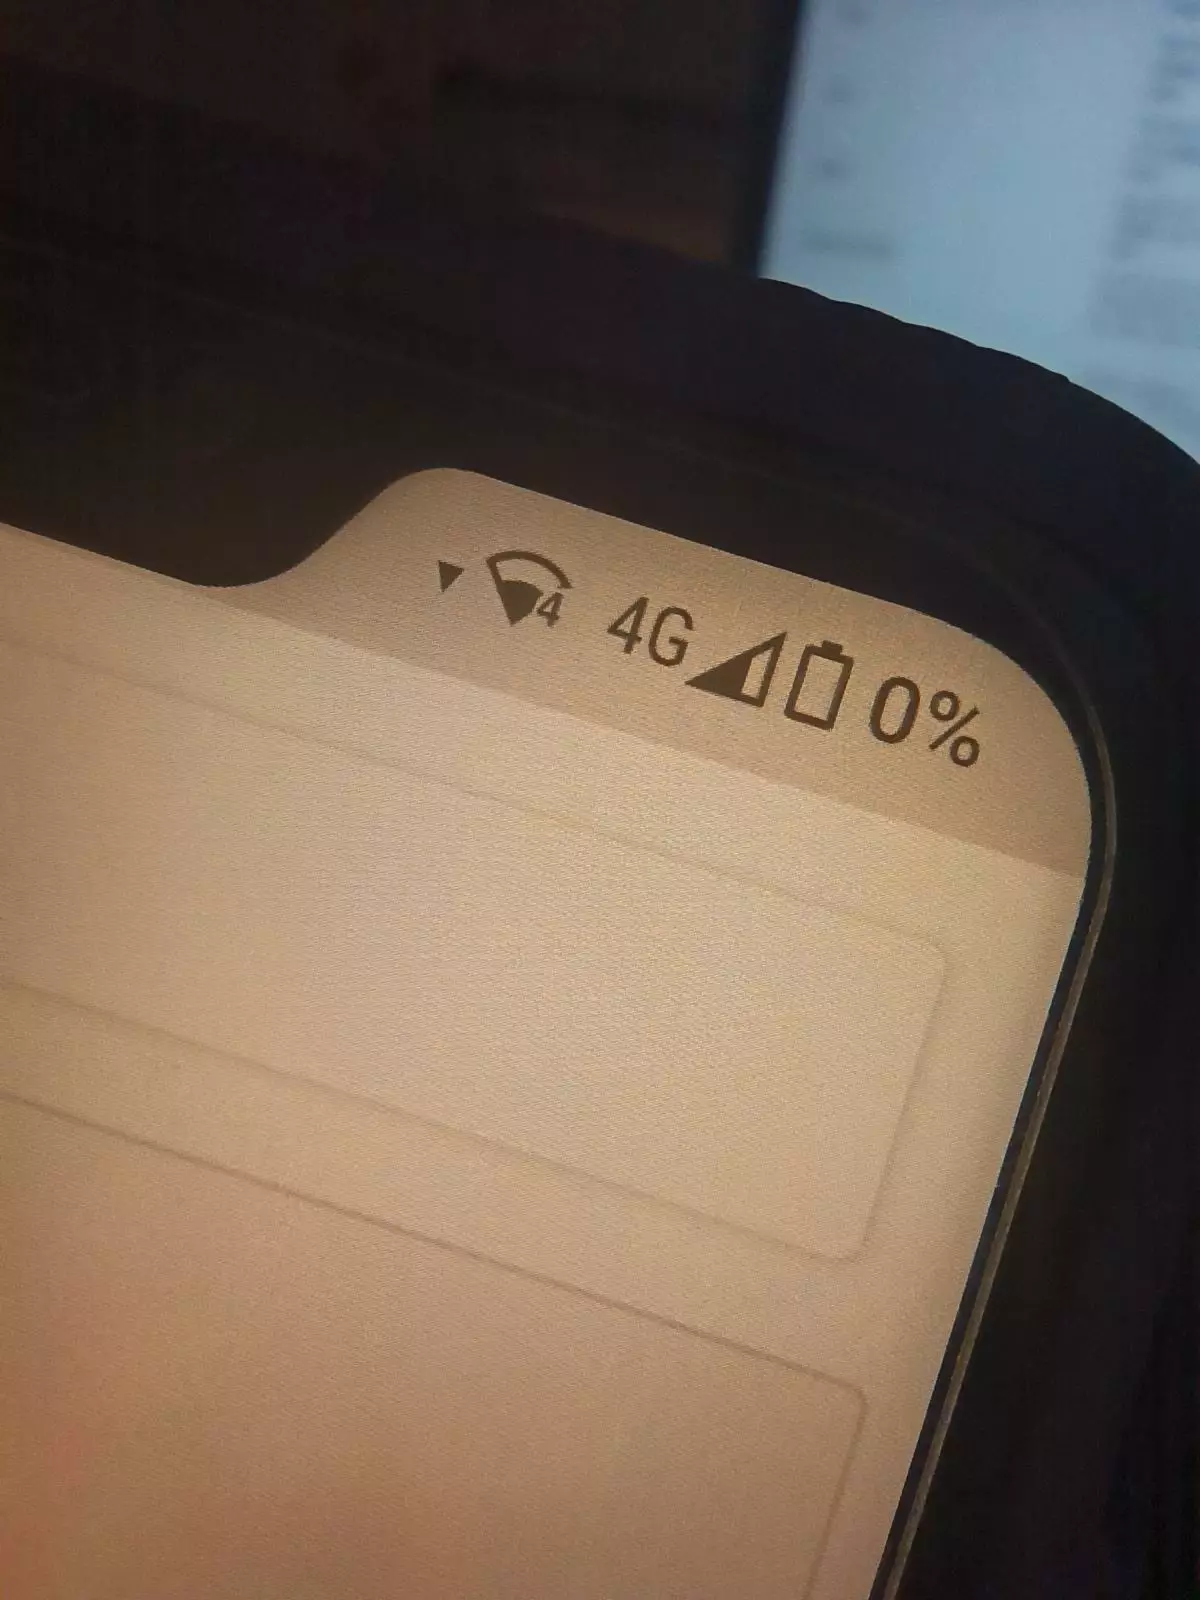 На Xiaomi Mi A2 Lite некорректно работает индикатор уровня заряда батареи